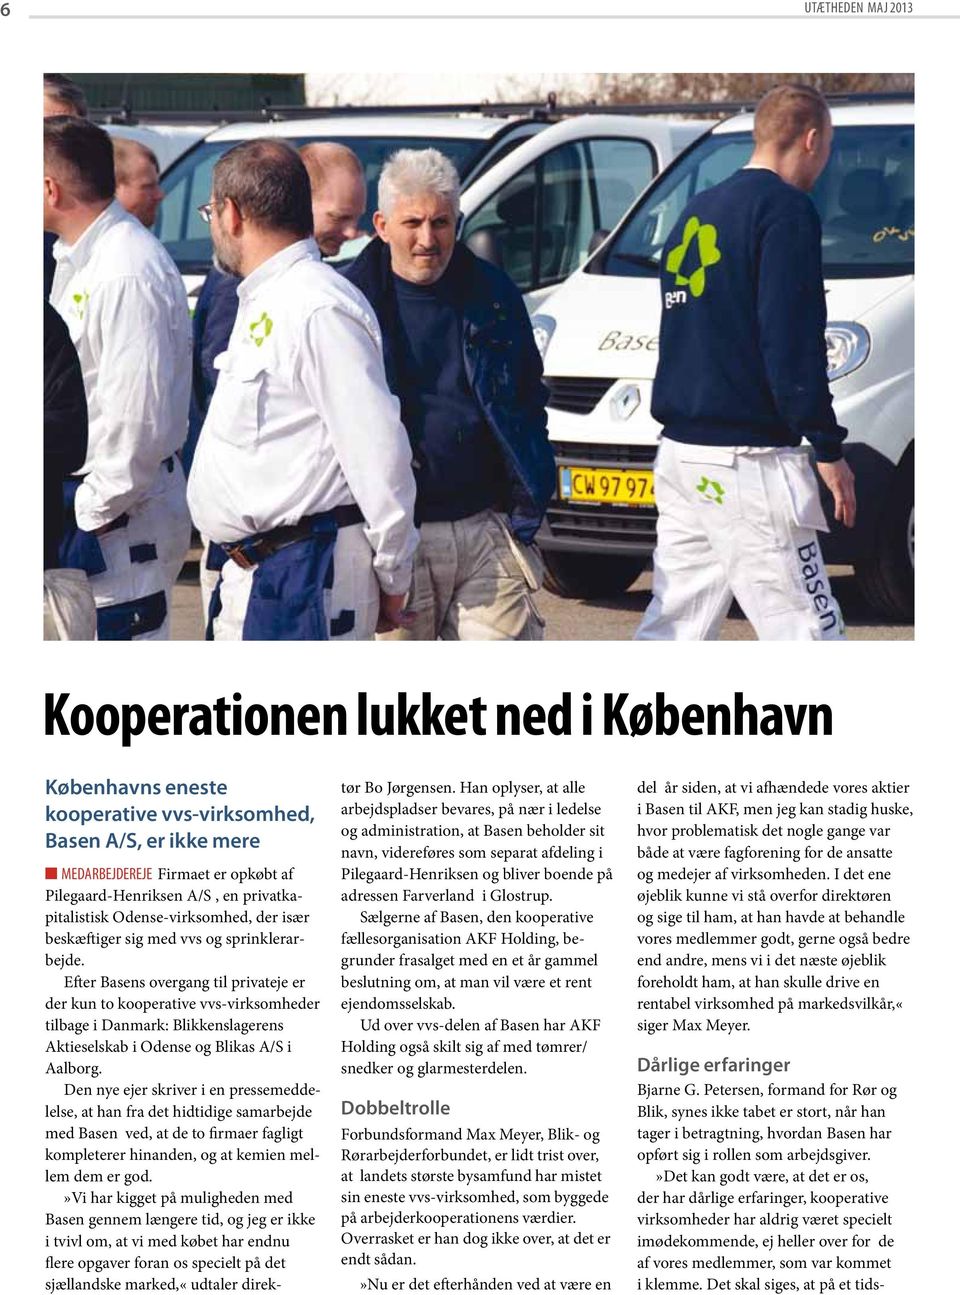 Utætheden. Kom og hjælp mig, please. Rør og Blik København. Blikkenslager i  storkollektiv: 3/2013 Maj - PDF Free Download